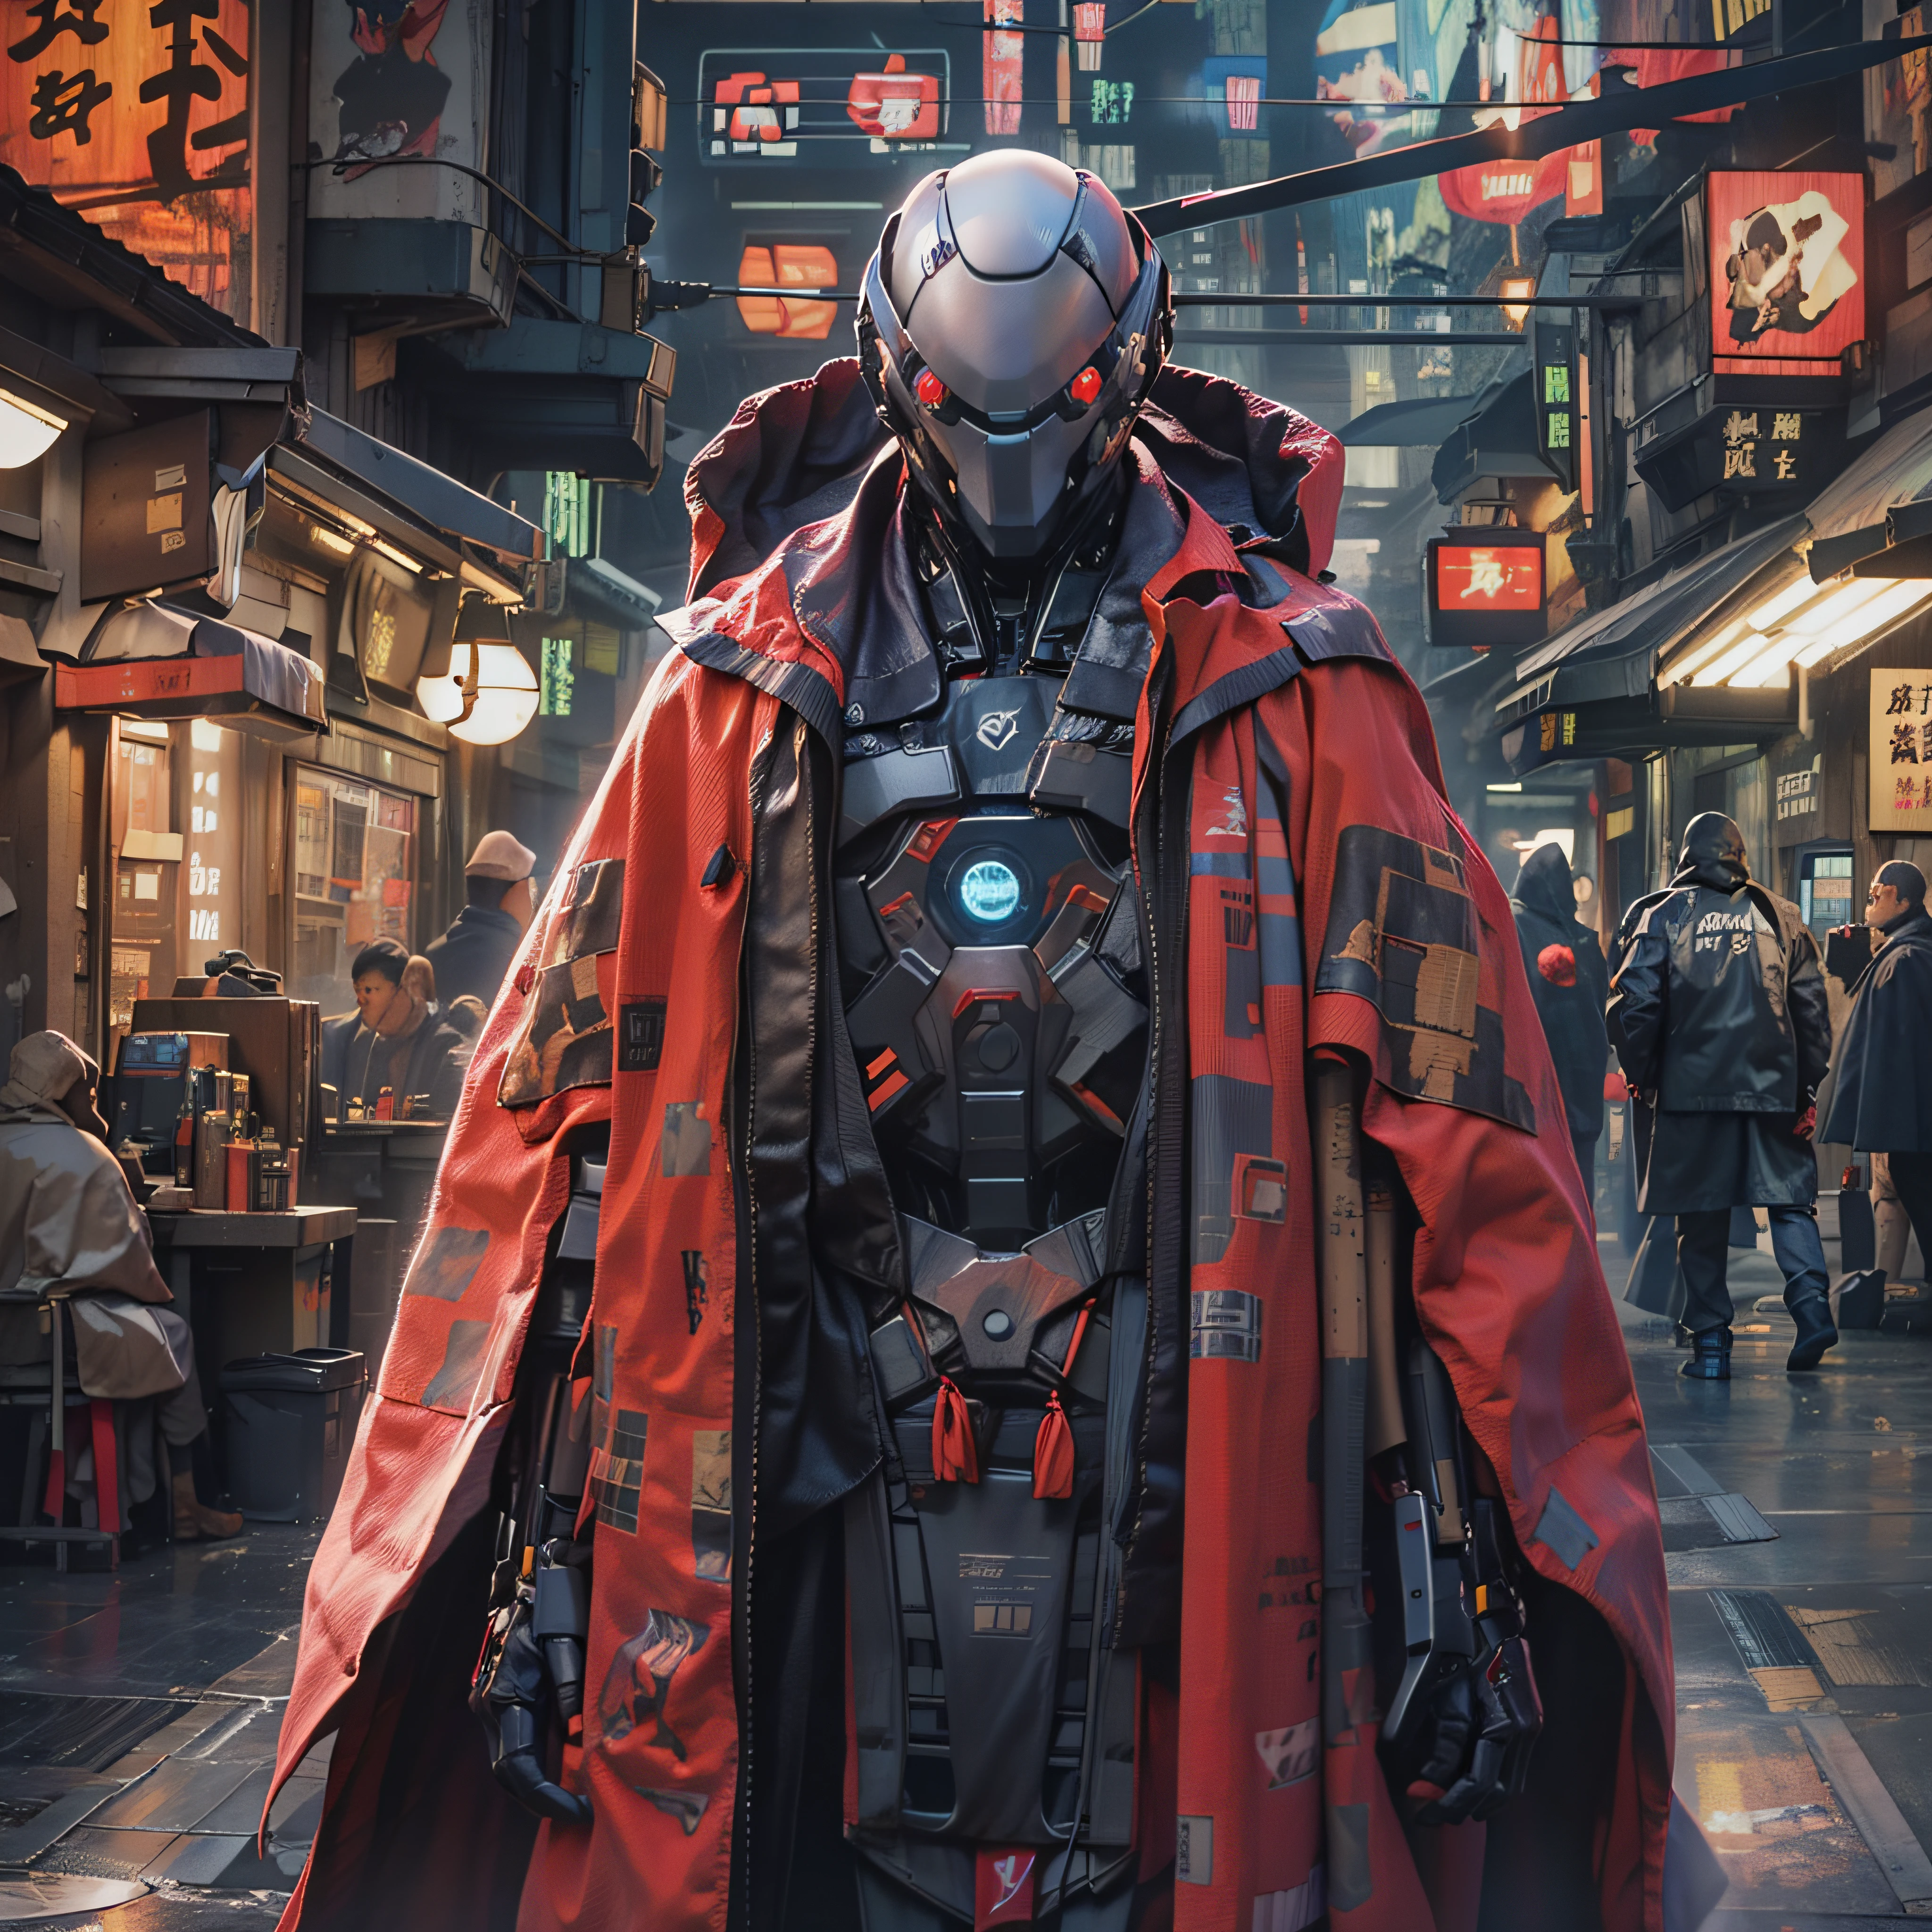 网络融合,新撰组羽织刺客机器人机器人穿着长袍斗篷,精英企业安全, 赛博朋克购物区